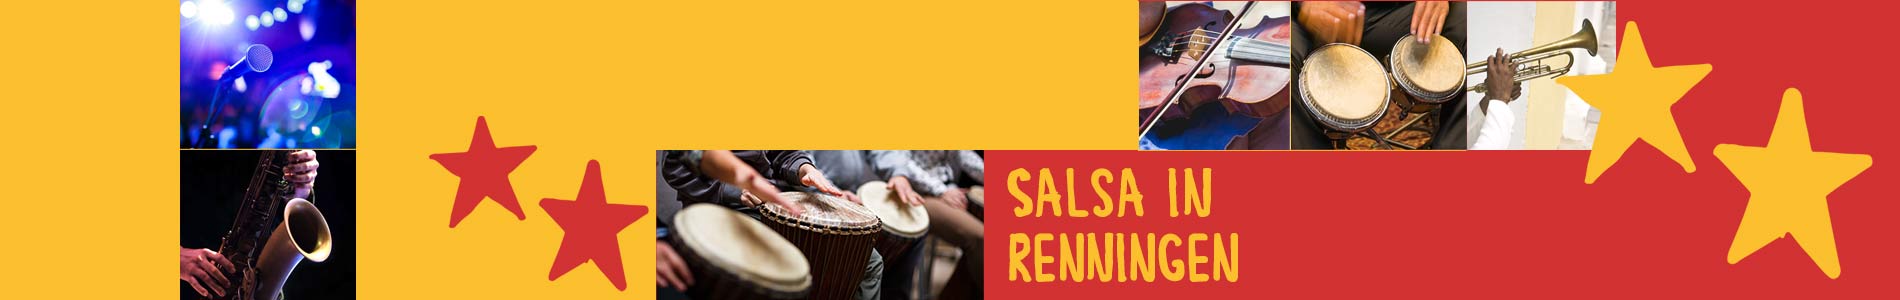 Salsa in Renningen – Salsa lernen und tanzen, Tanzkurse, Partys, Veranstaltungen